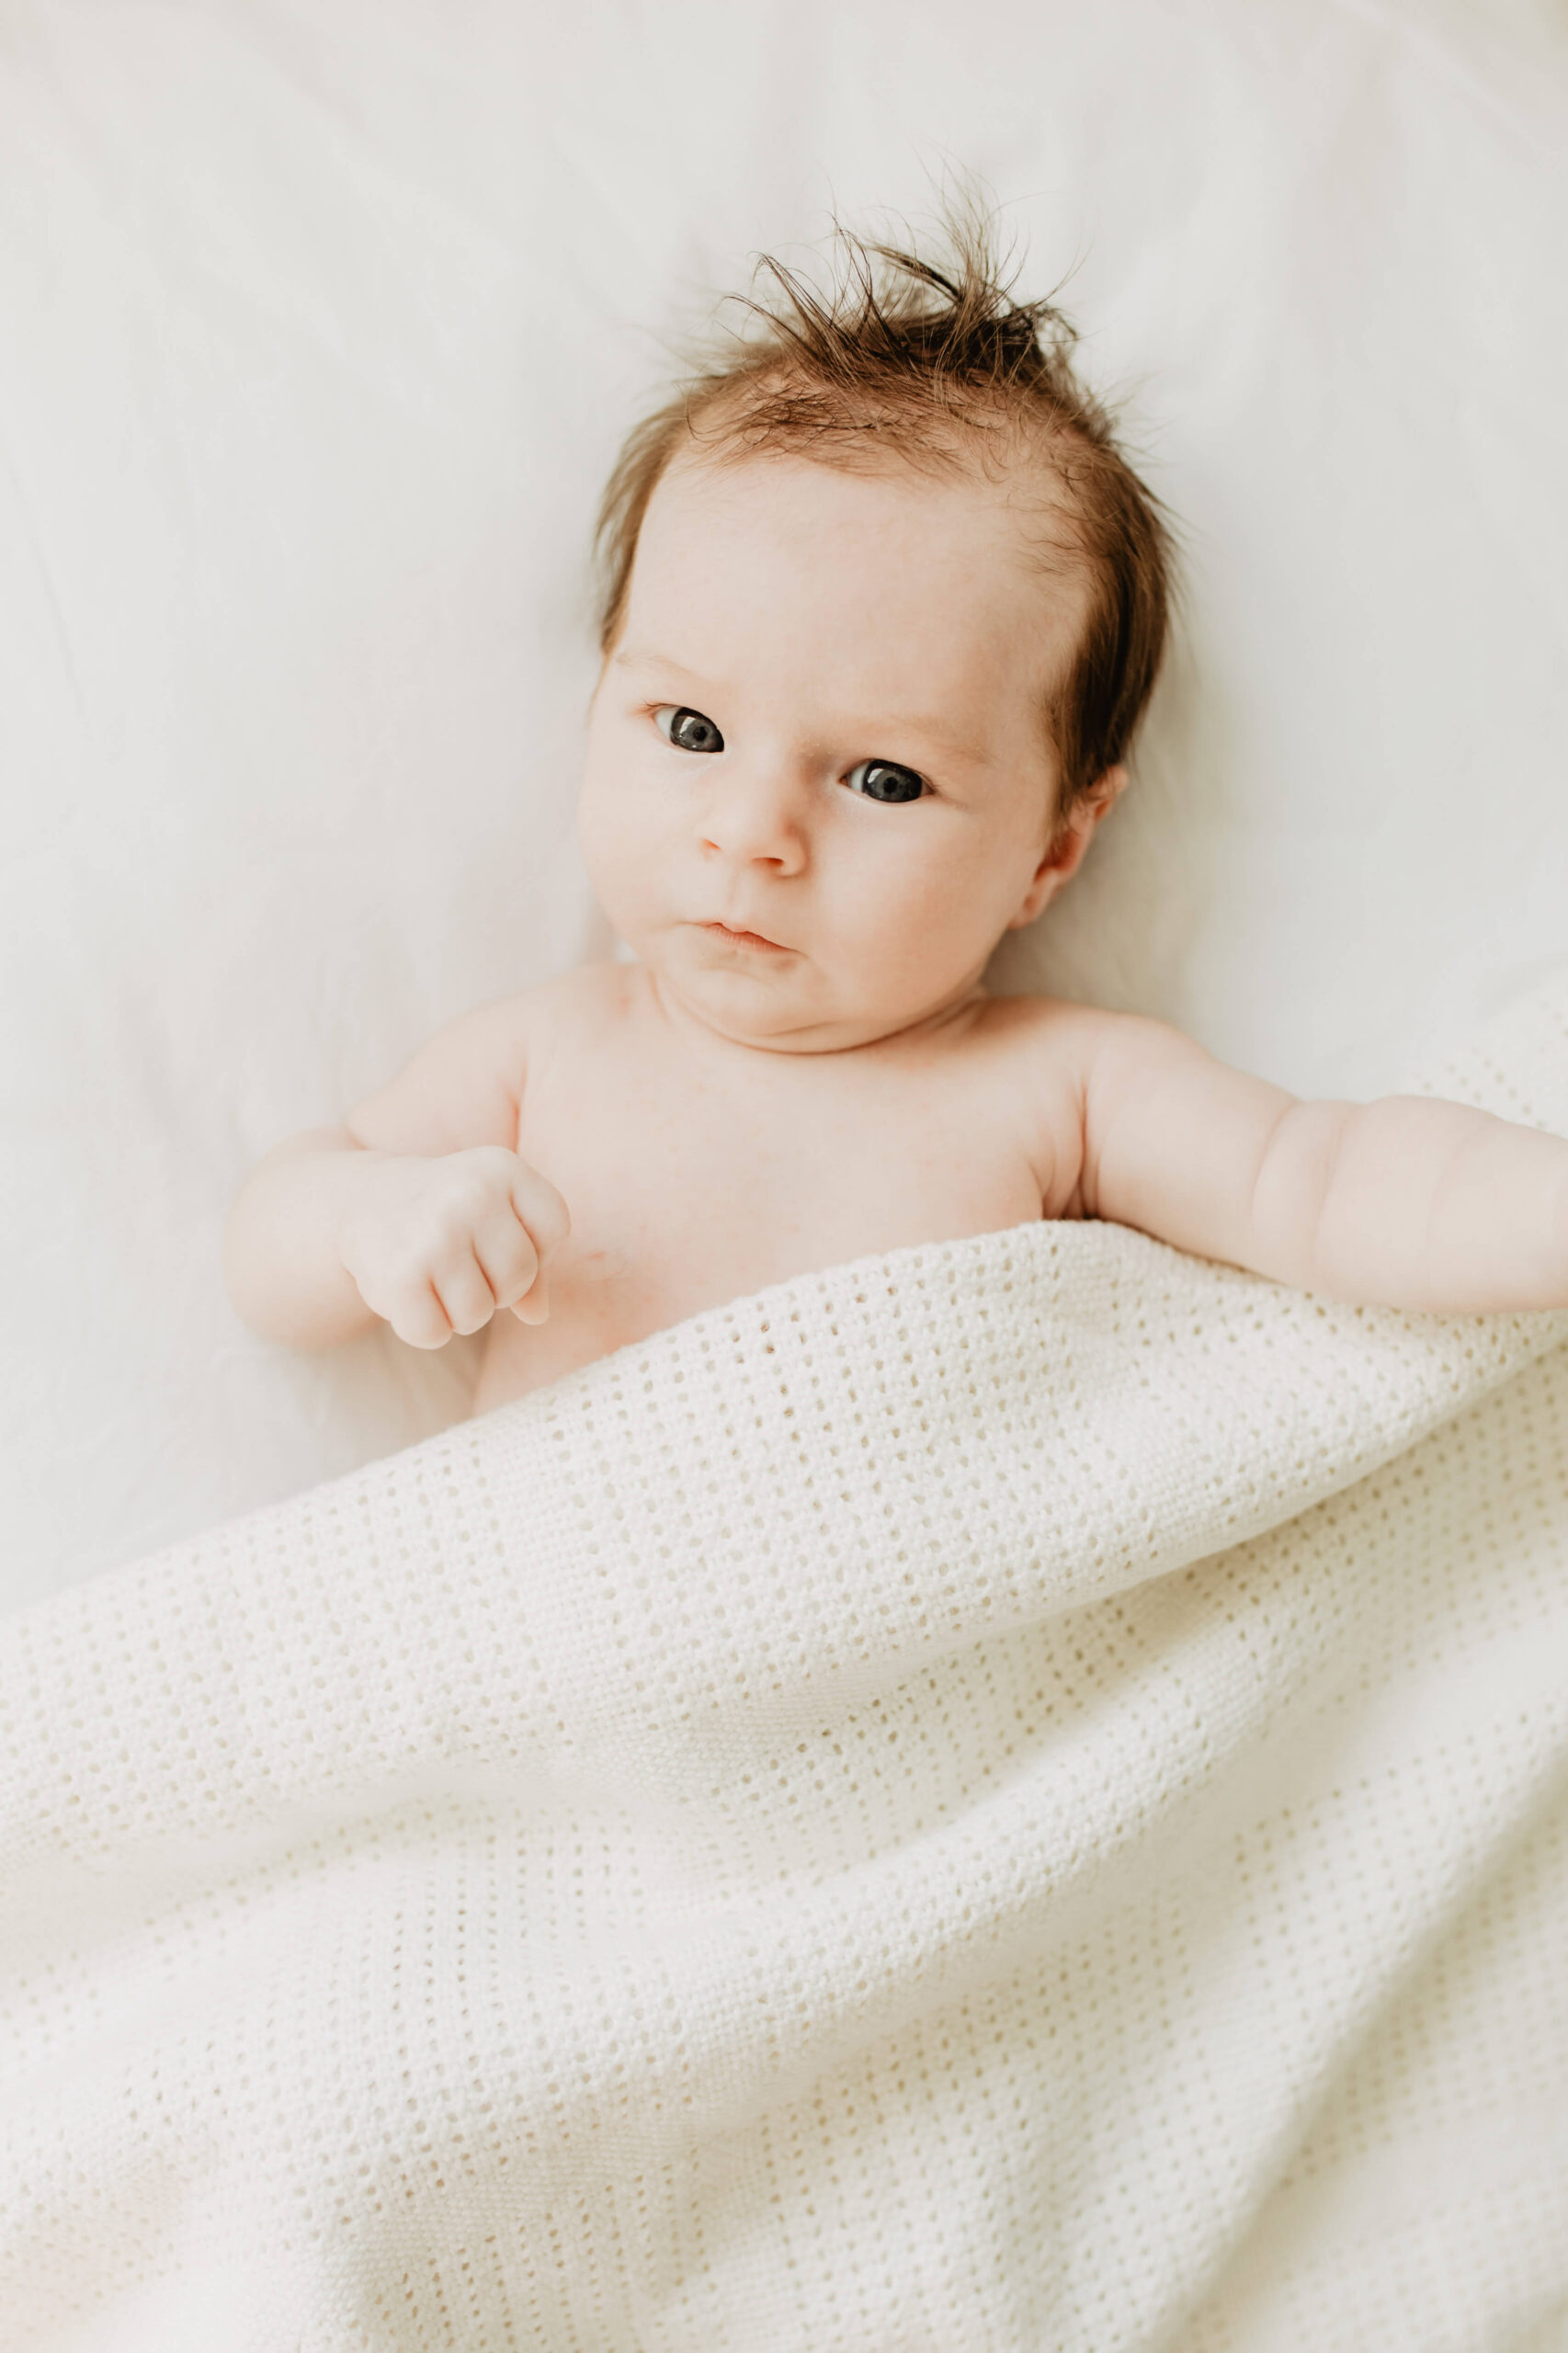 Neugeborenes schaut direkt in die Kamera, zugedeckt mit einer Decke